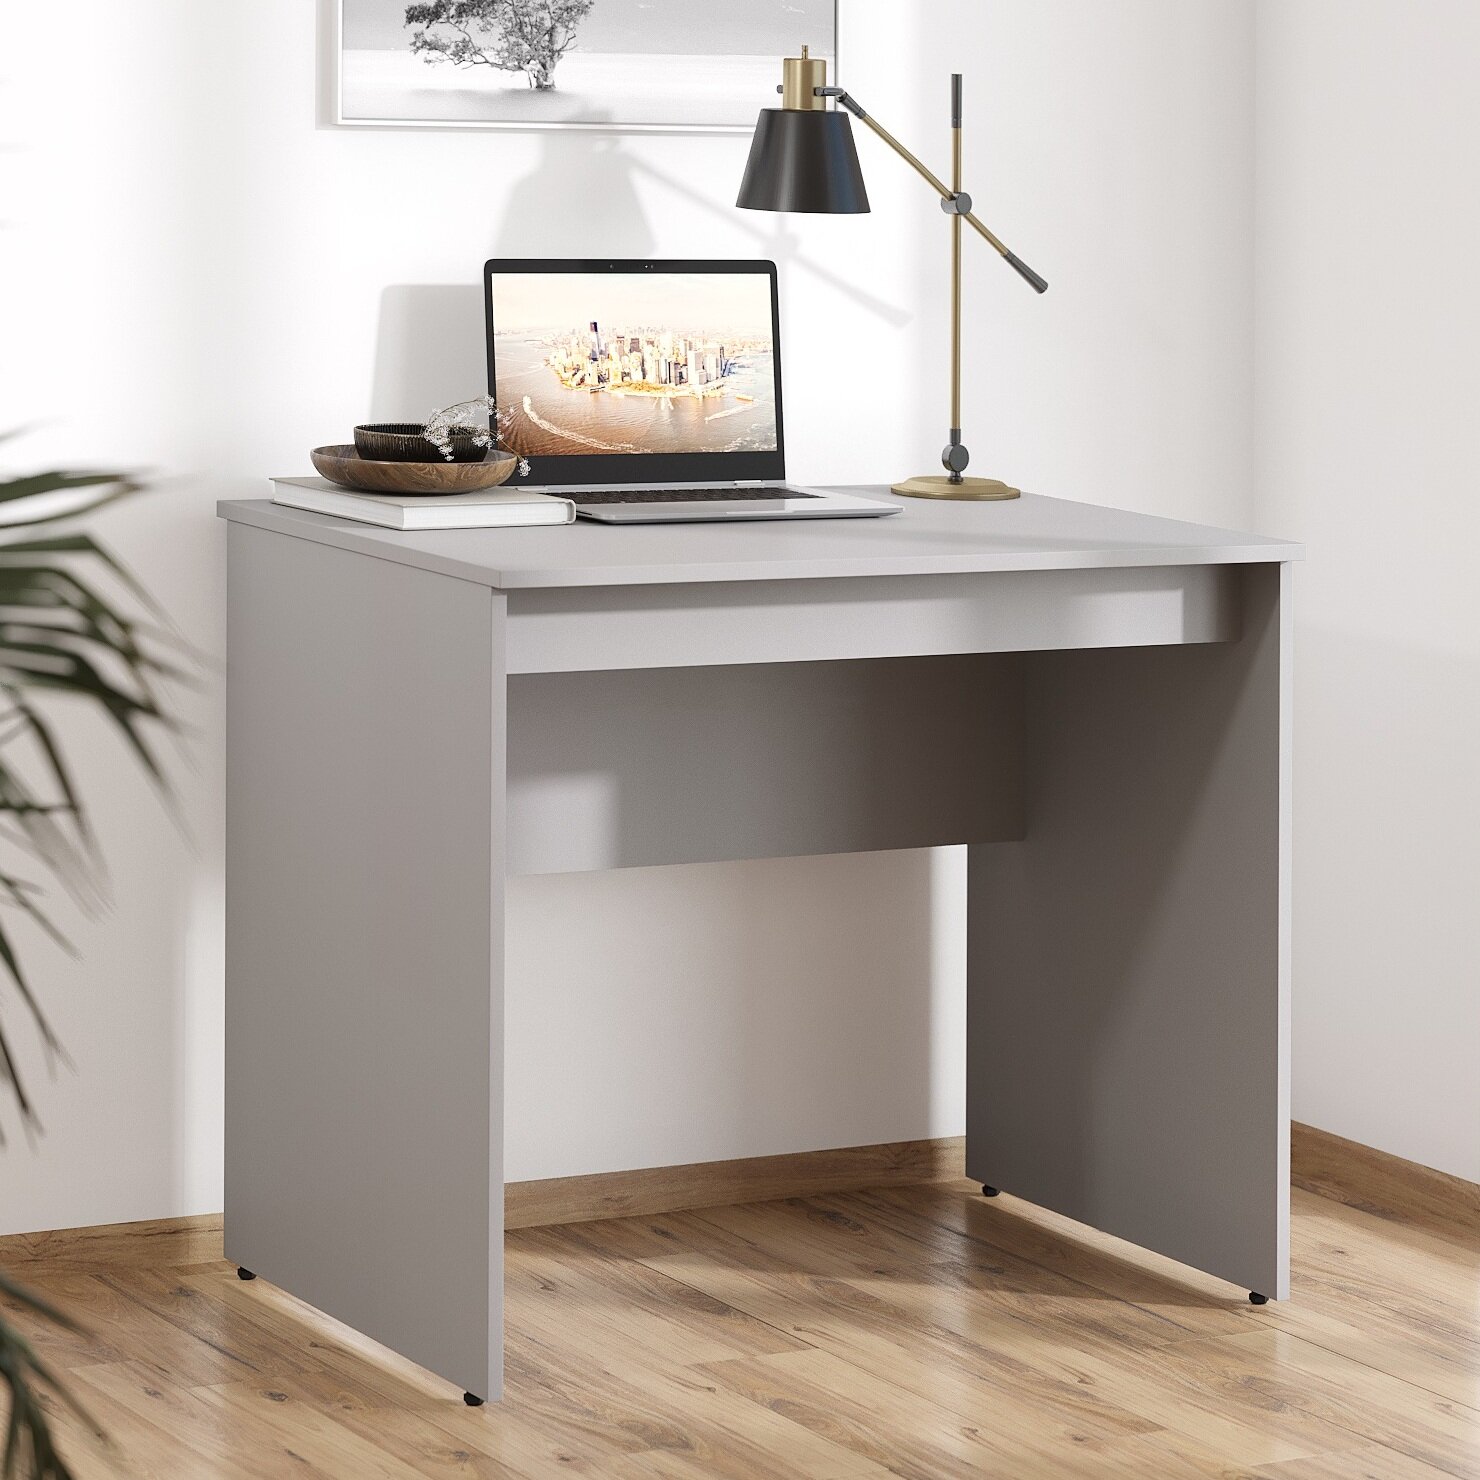 Письменный стол, компьютерный стол SKYLAND SIMPLE S-900, серый, 90х60х76 см